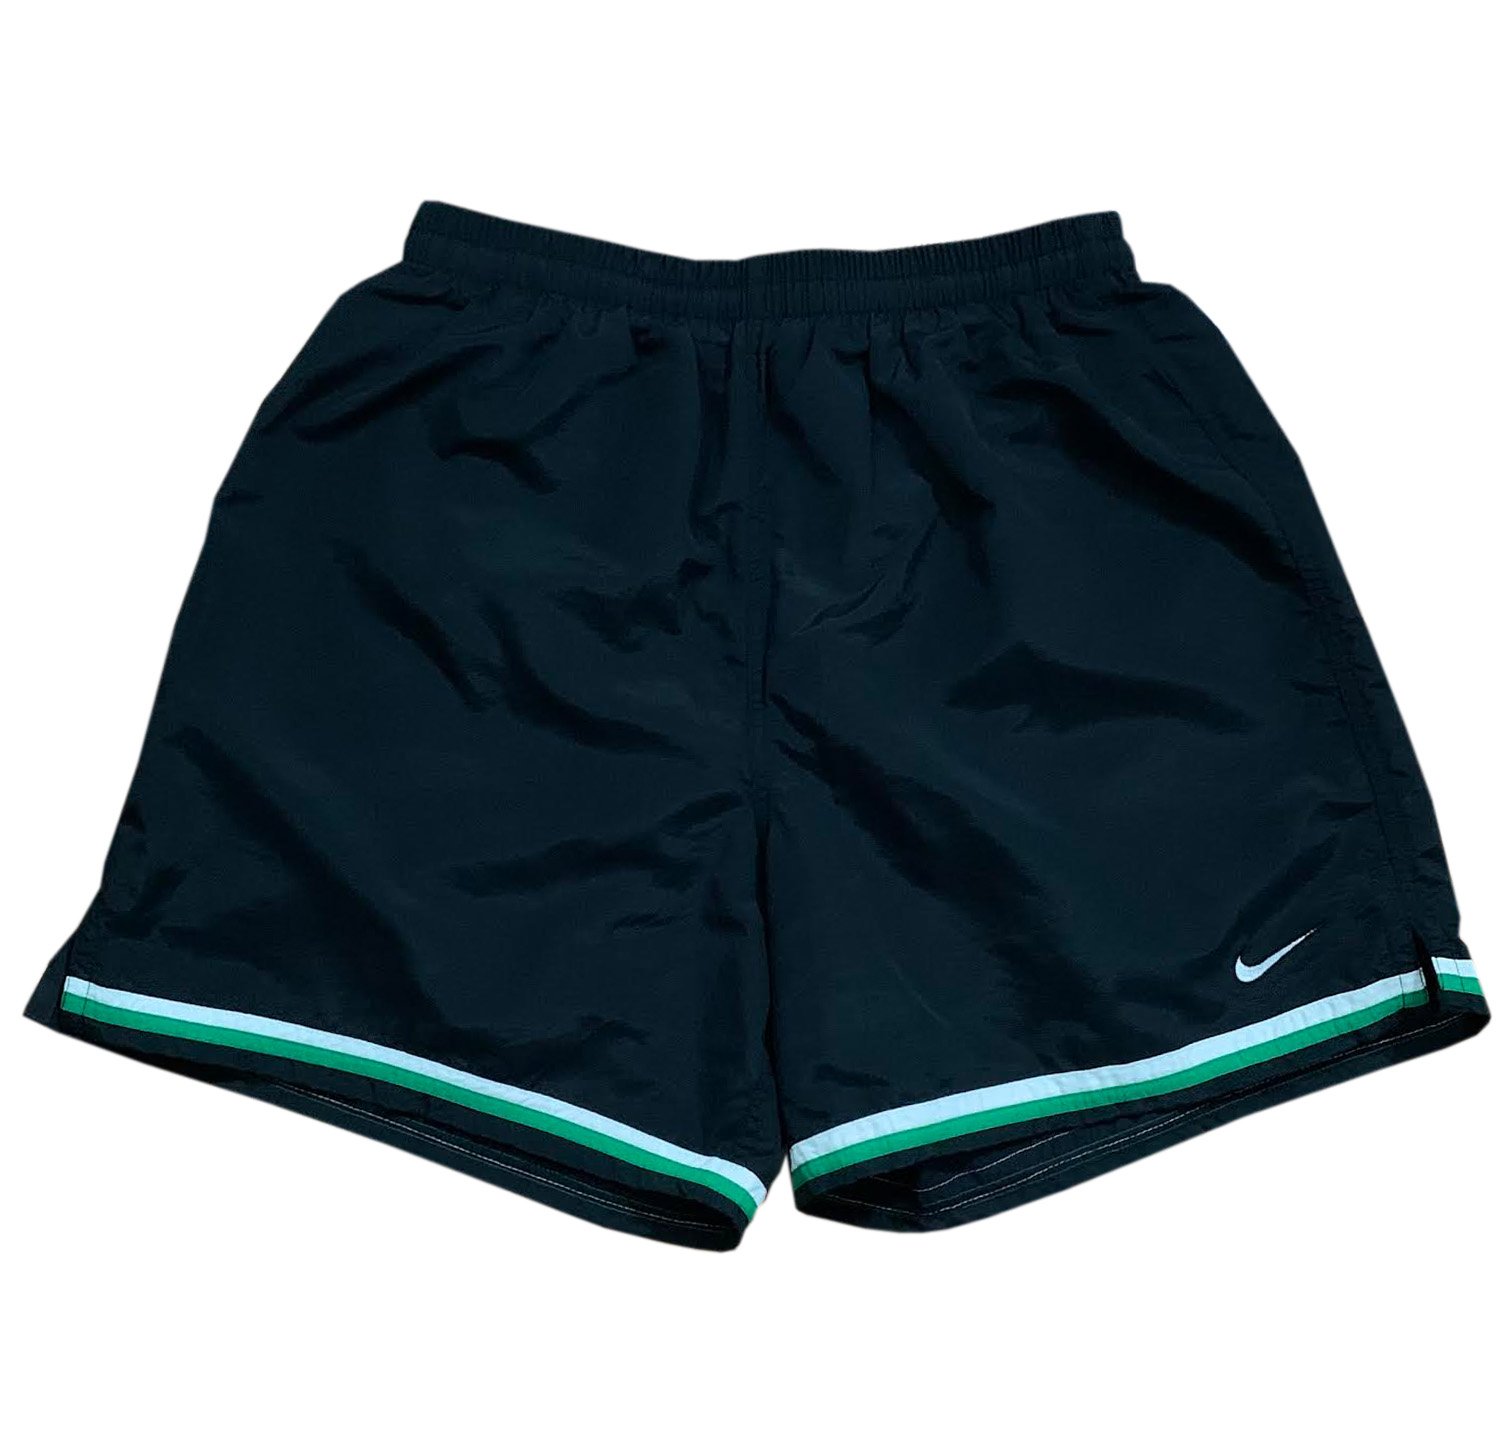 Vintage Nike Nylon Black / Green Shorts (Size L) — Roots